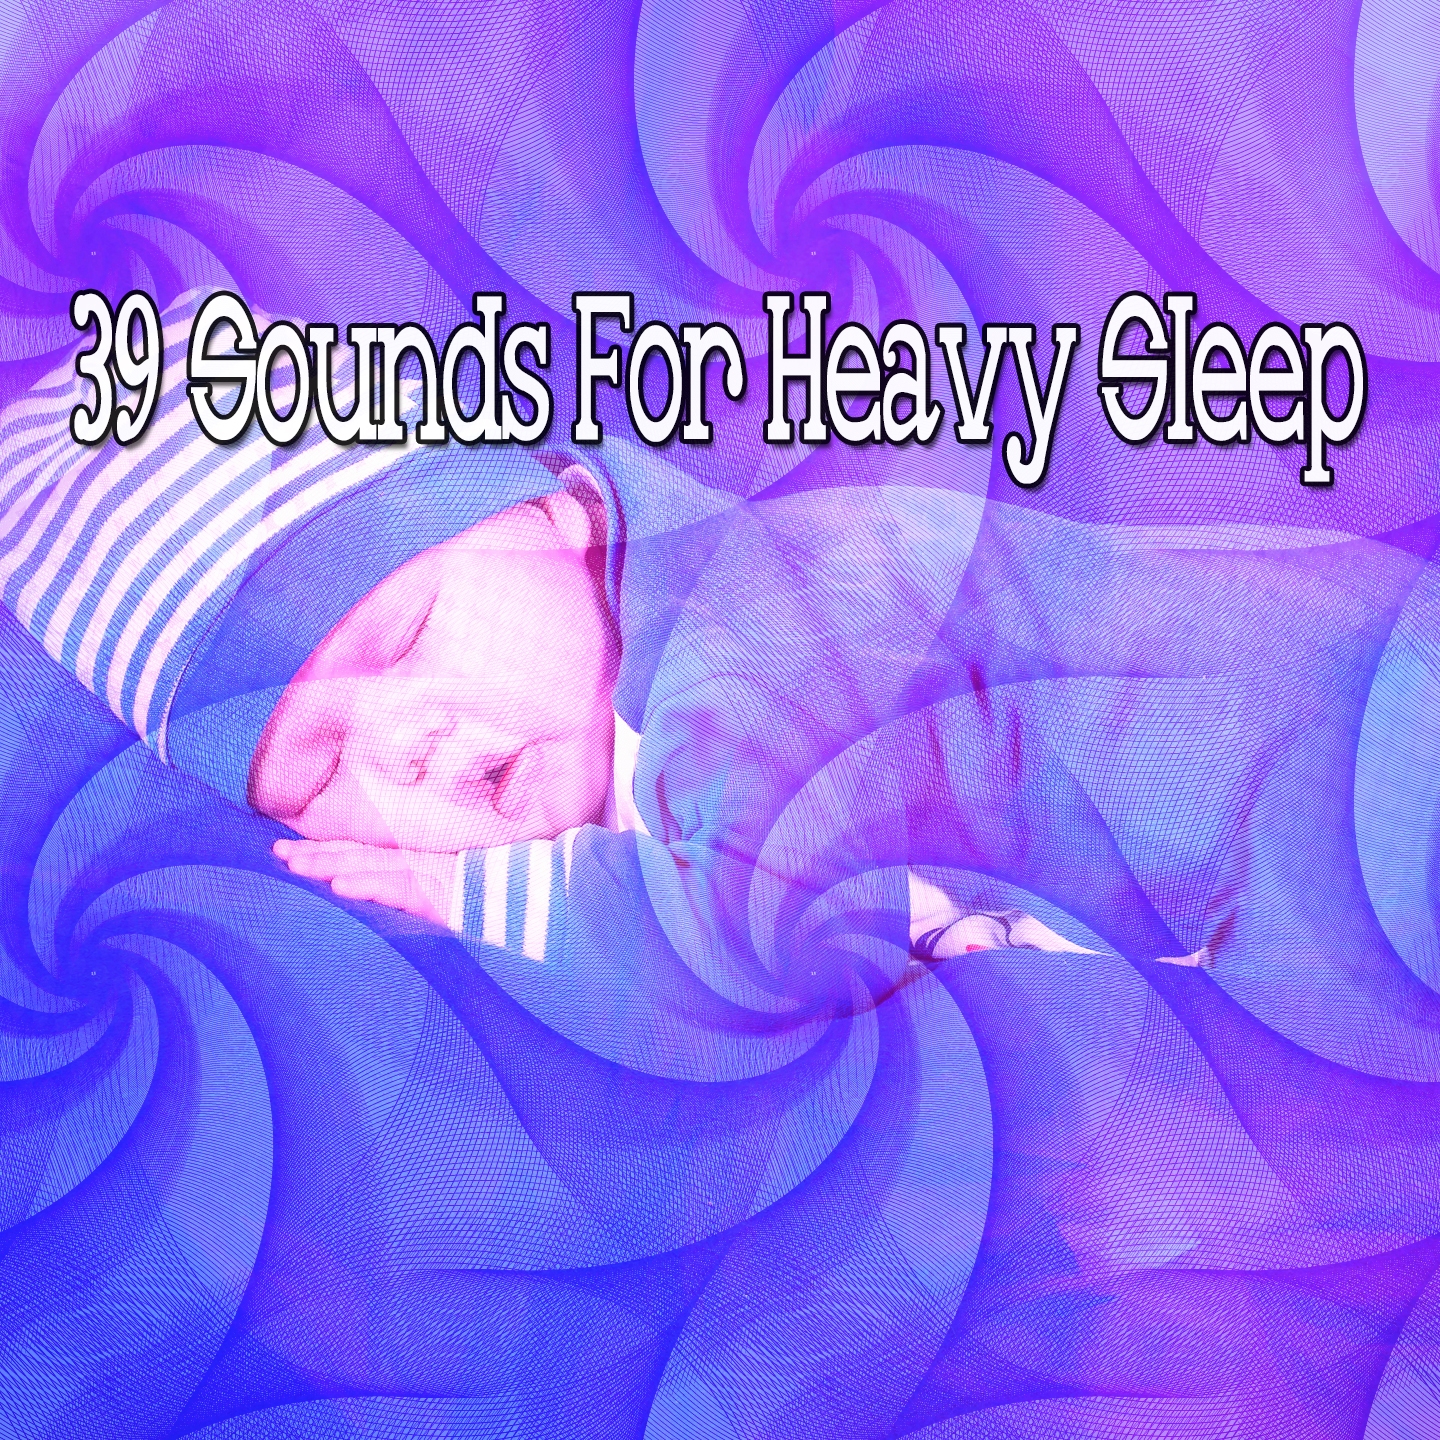 39 Sounds For Heavy Sleep